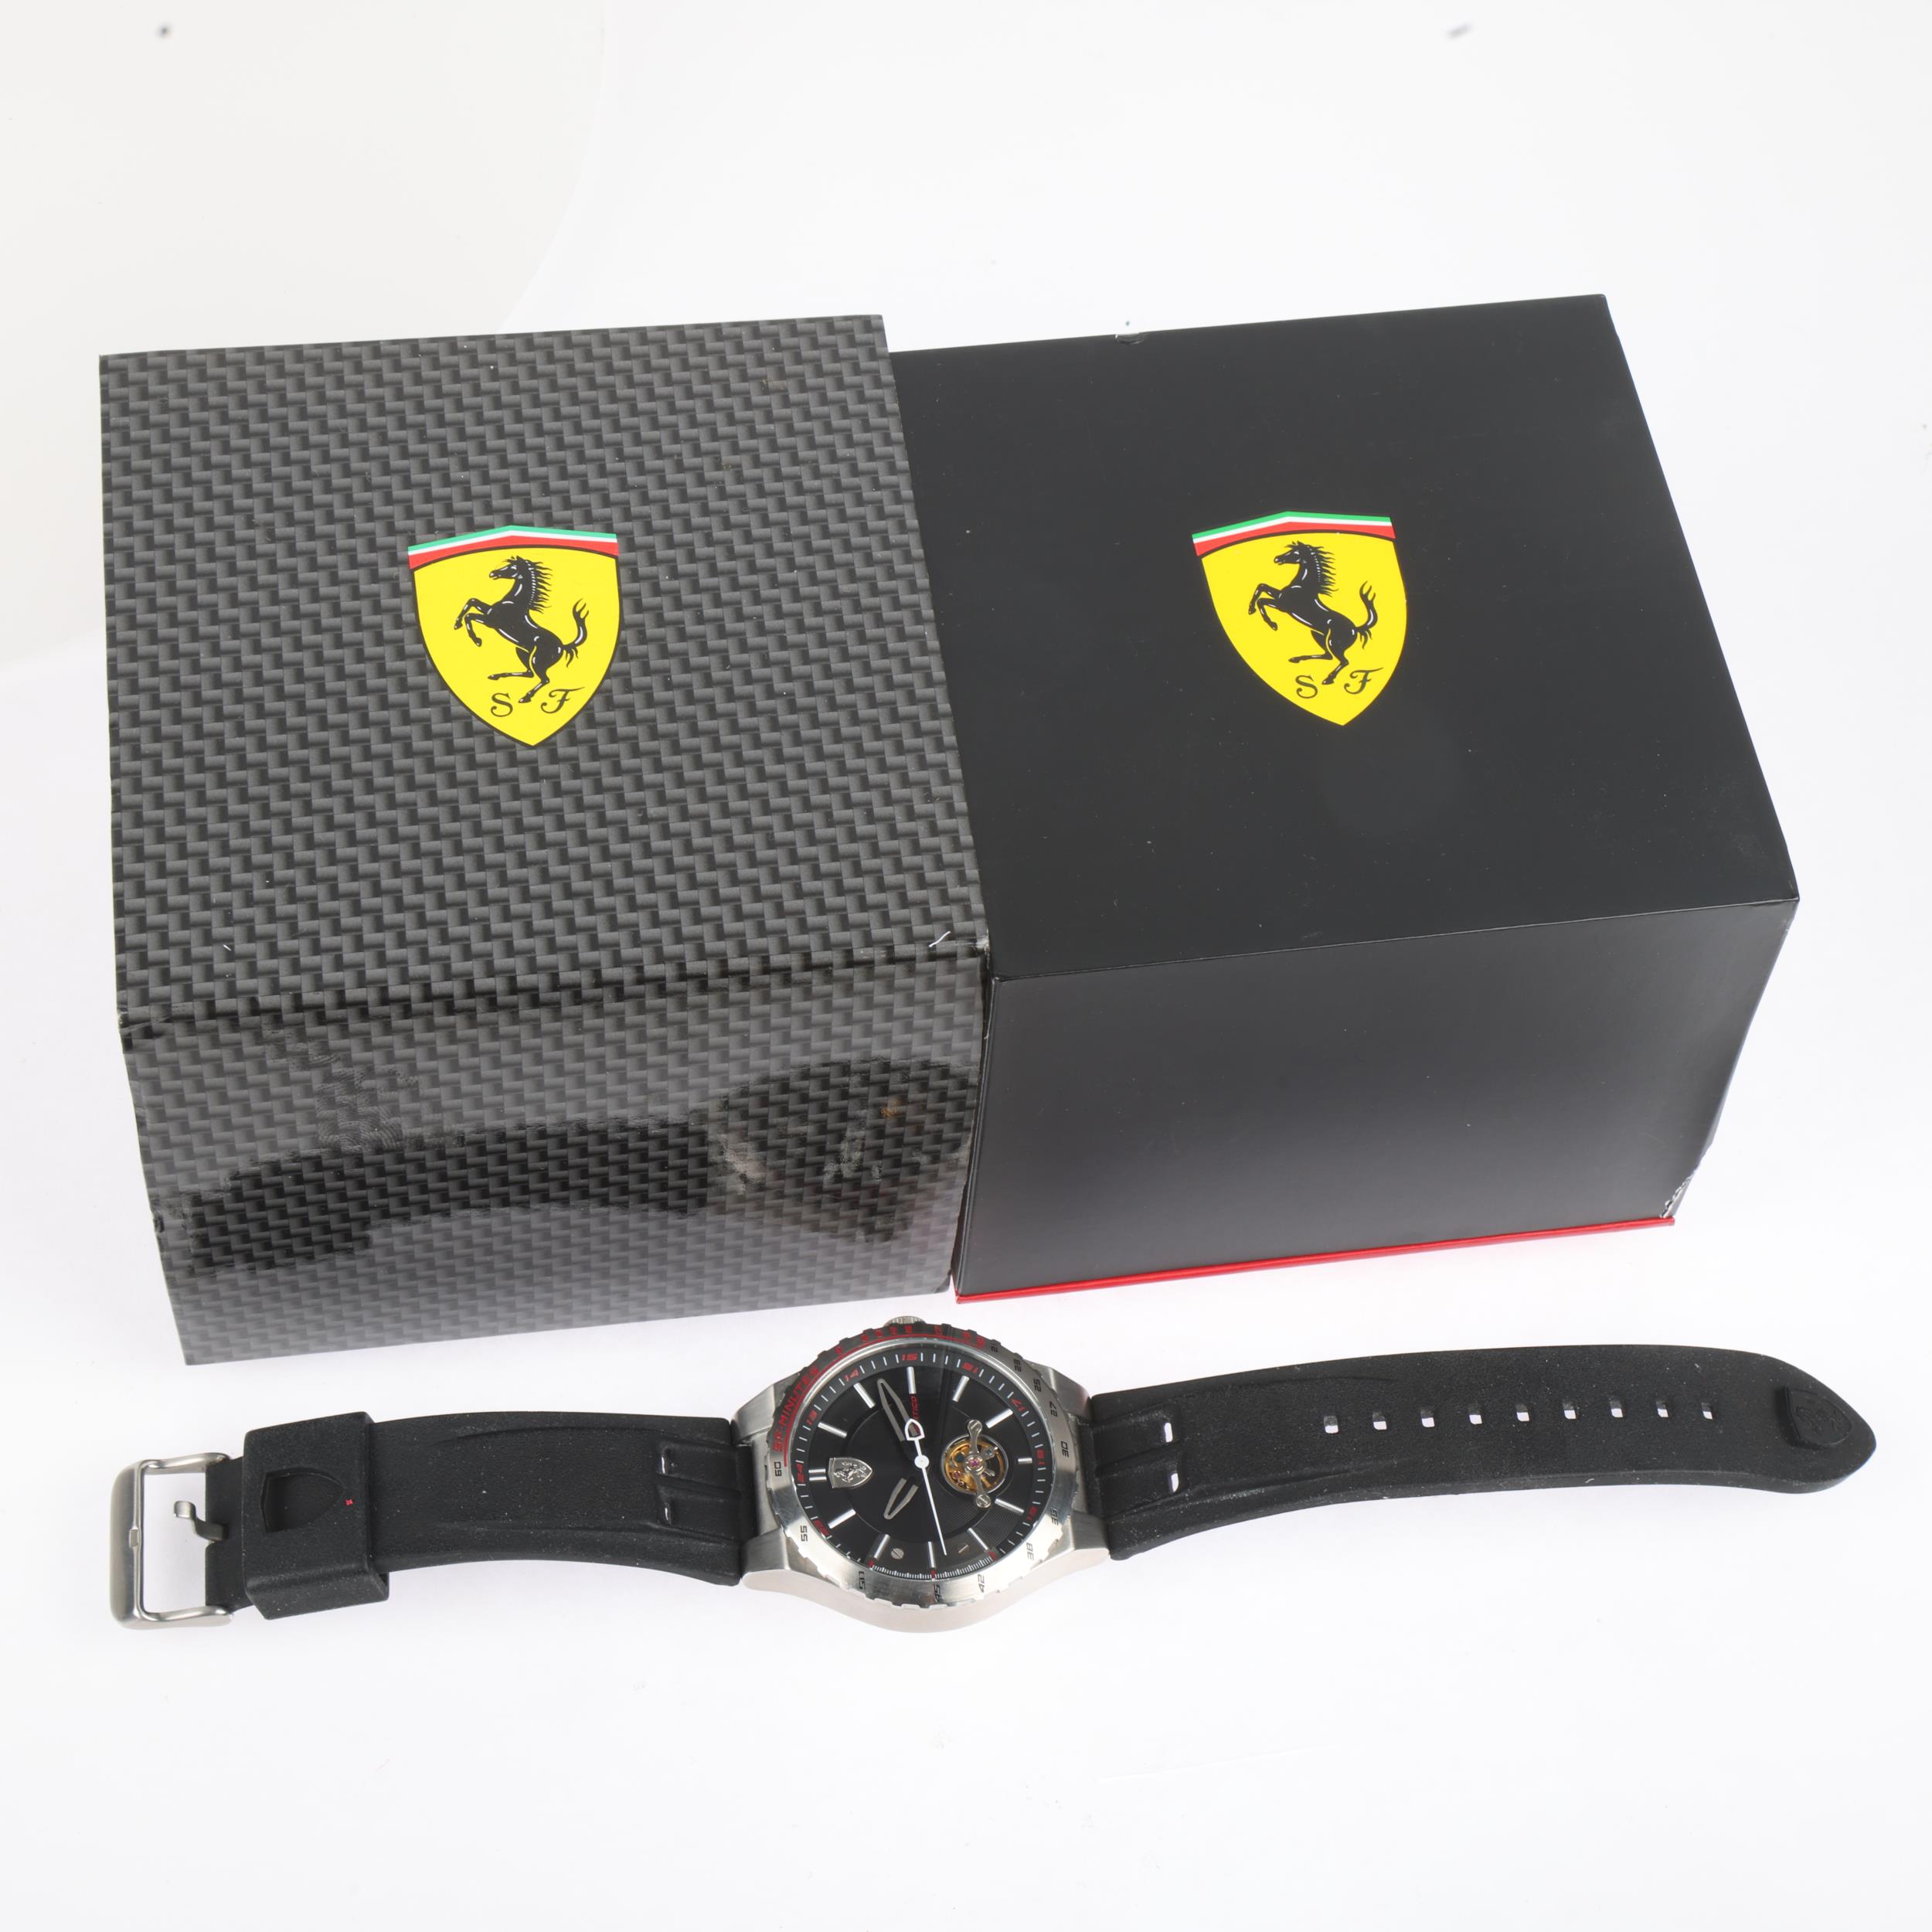 FERRARI - a stainless steel Scuderia Ferrari Speciale Evo automatic wristwatch, ref. SF.36.1.14. - Bild 5 aus 5